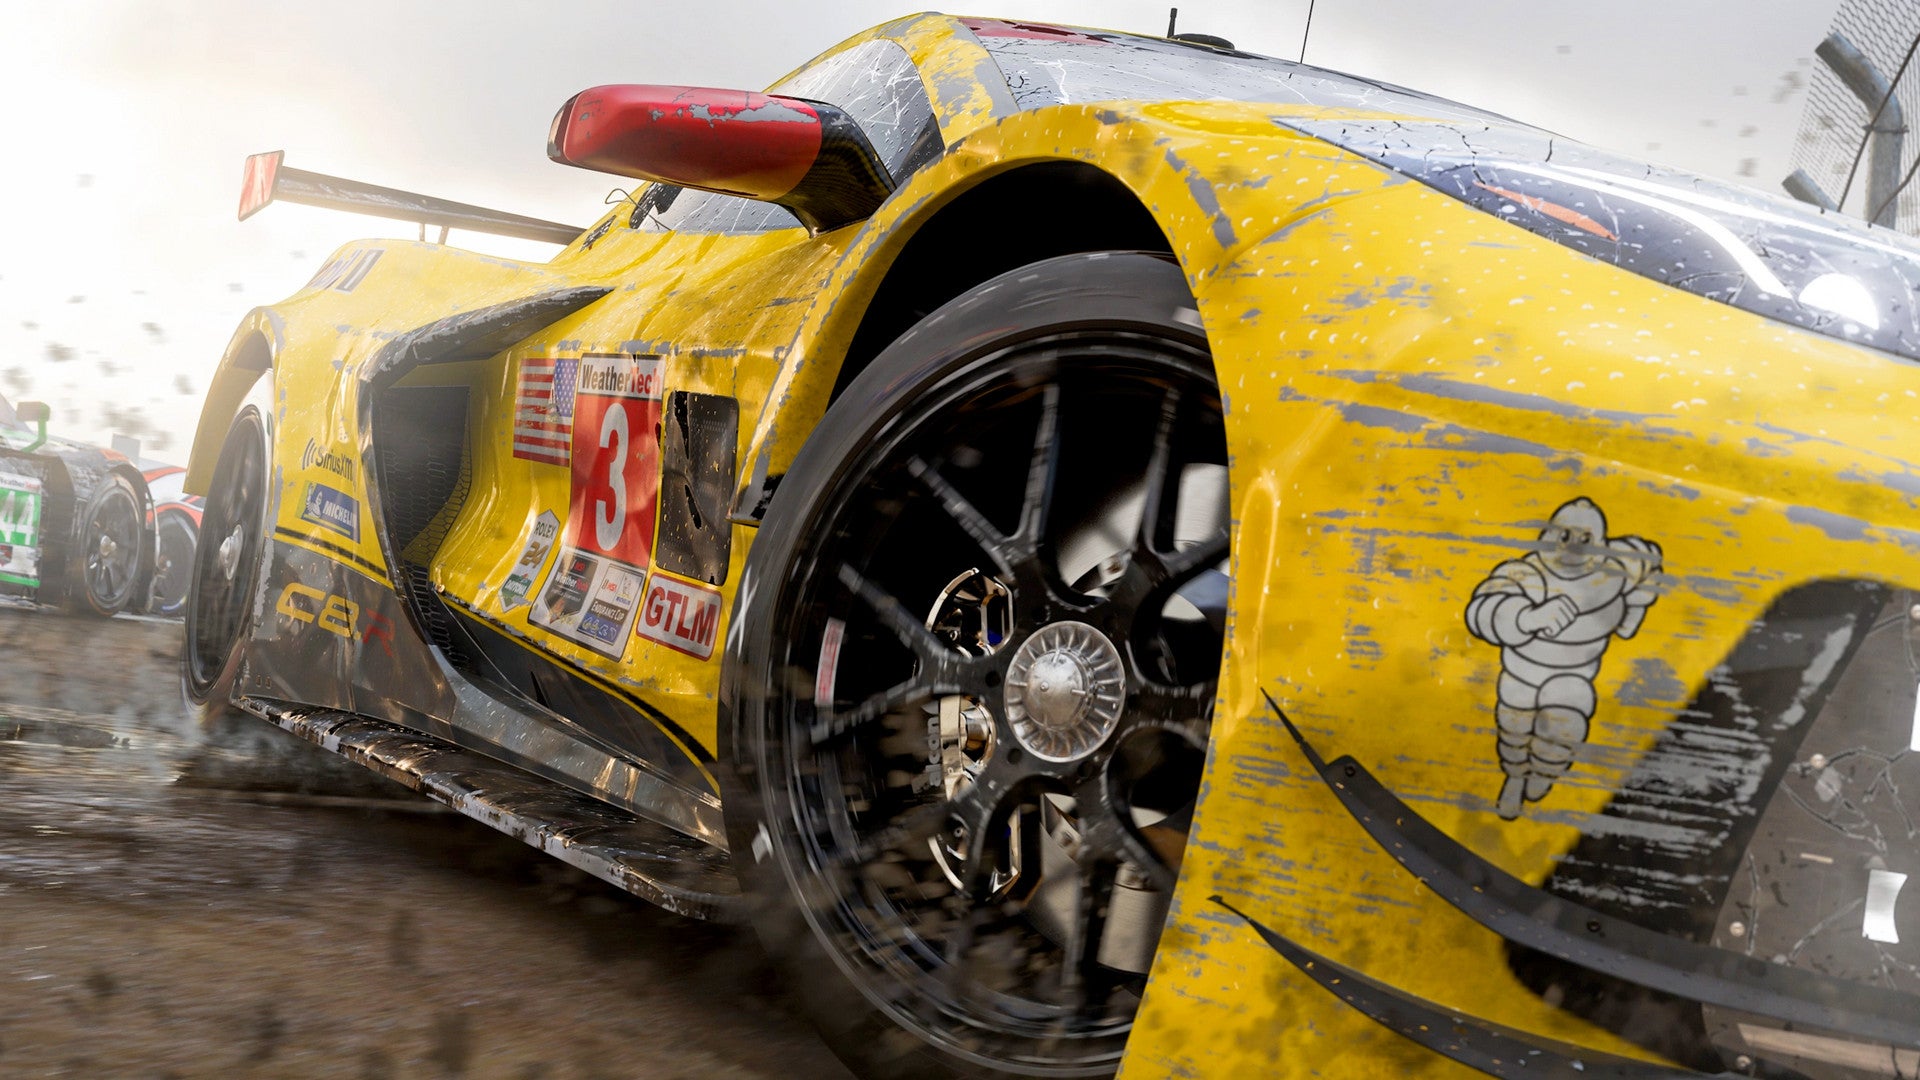 Bilder zu Forza Motorsport: Raytracing ist beim Fahren aktiviert, betont der Creative Director